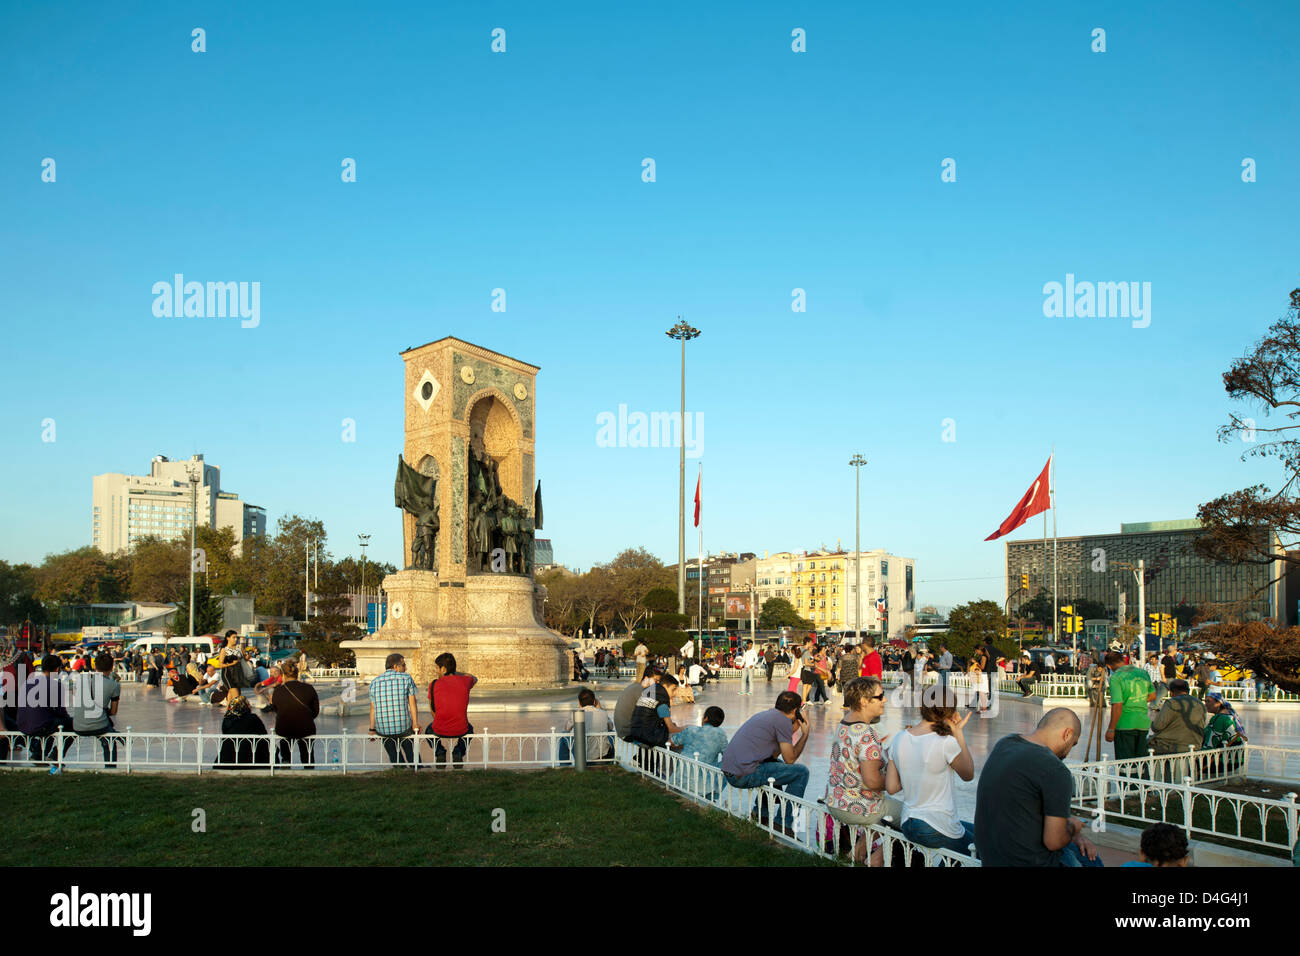 Taksim-Platz, Beyoglu, Istanbul, Ägypten Verkehrsknotenpunkt Im Europäischen Teil Istanbuls Mit Dem Denkmal der Republik. Stockfoto